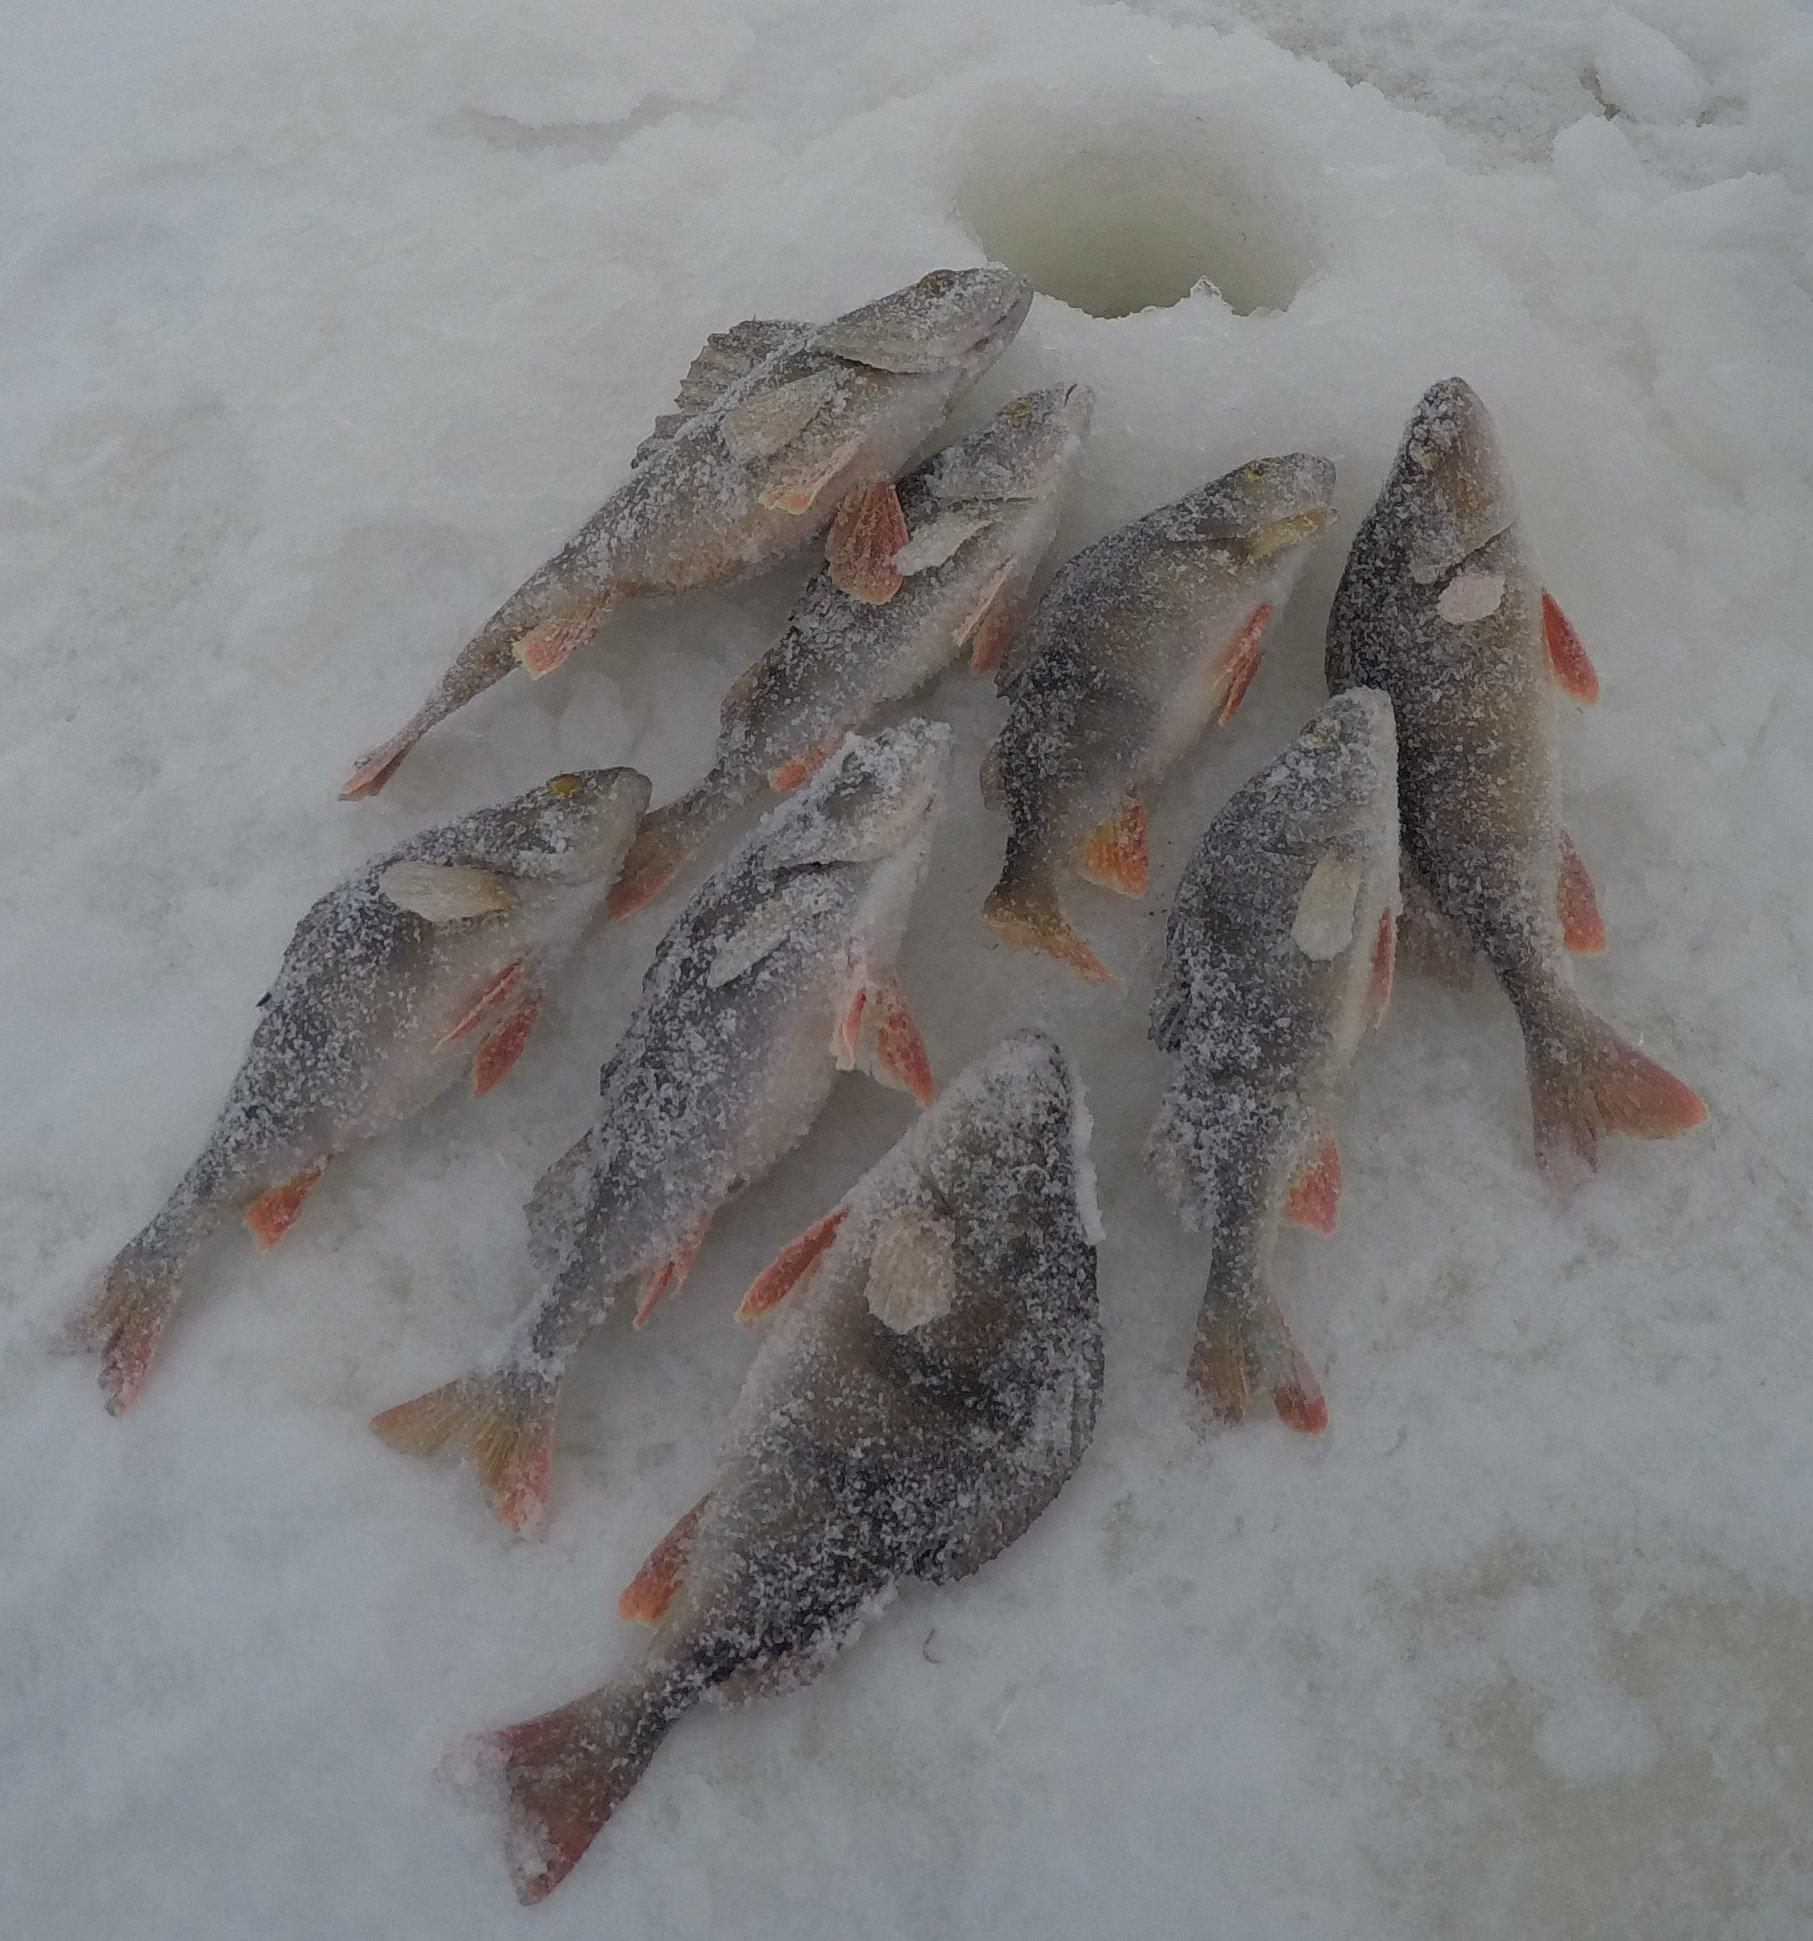 Зимняя рыбалка на озере Ильмень